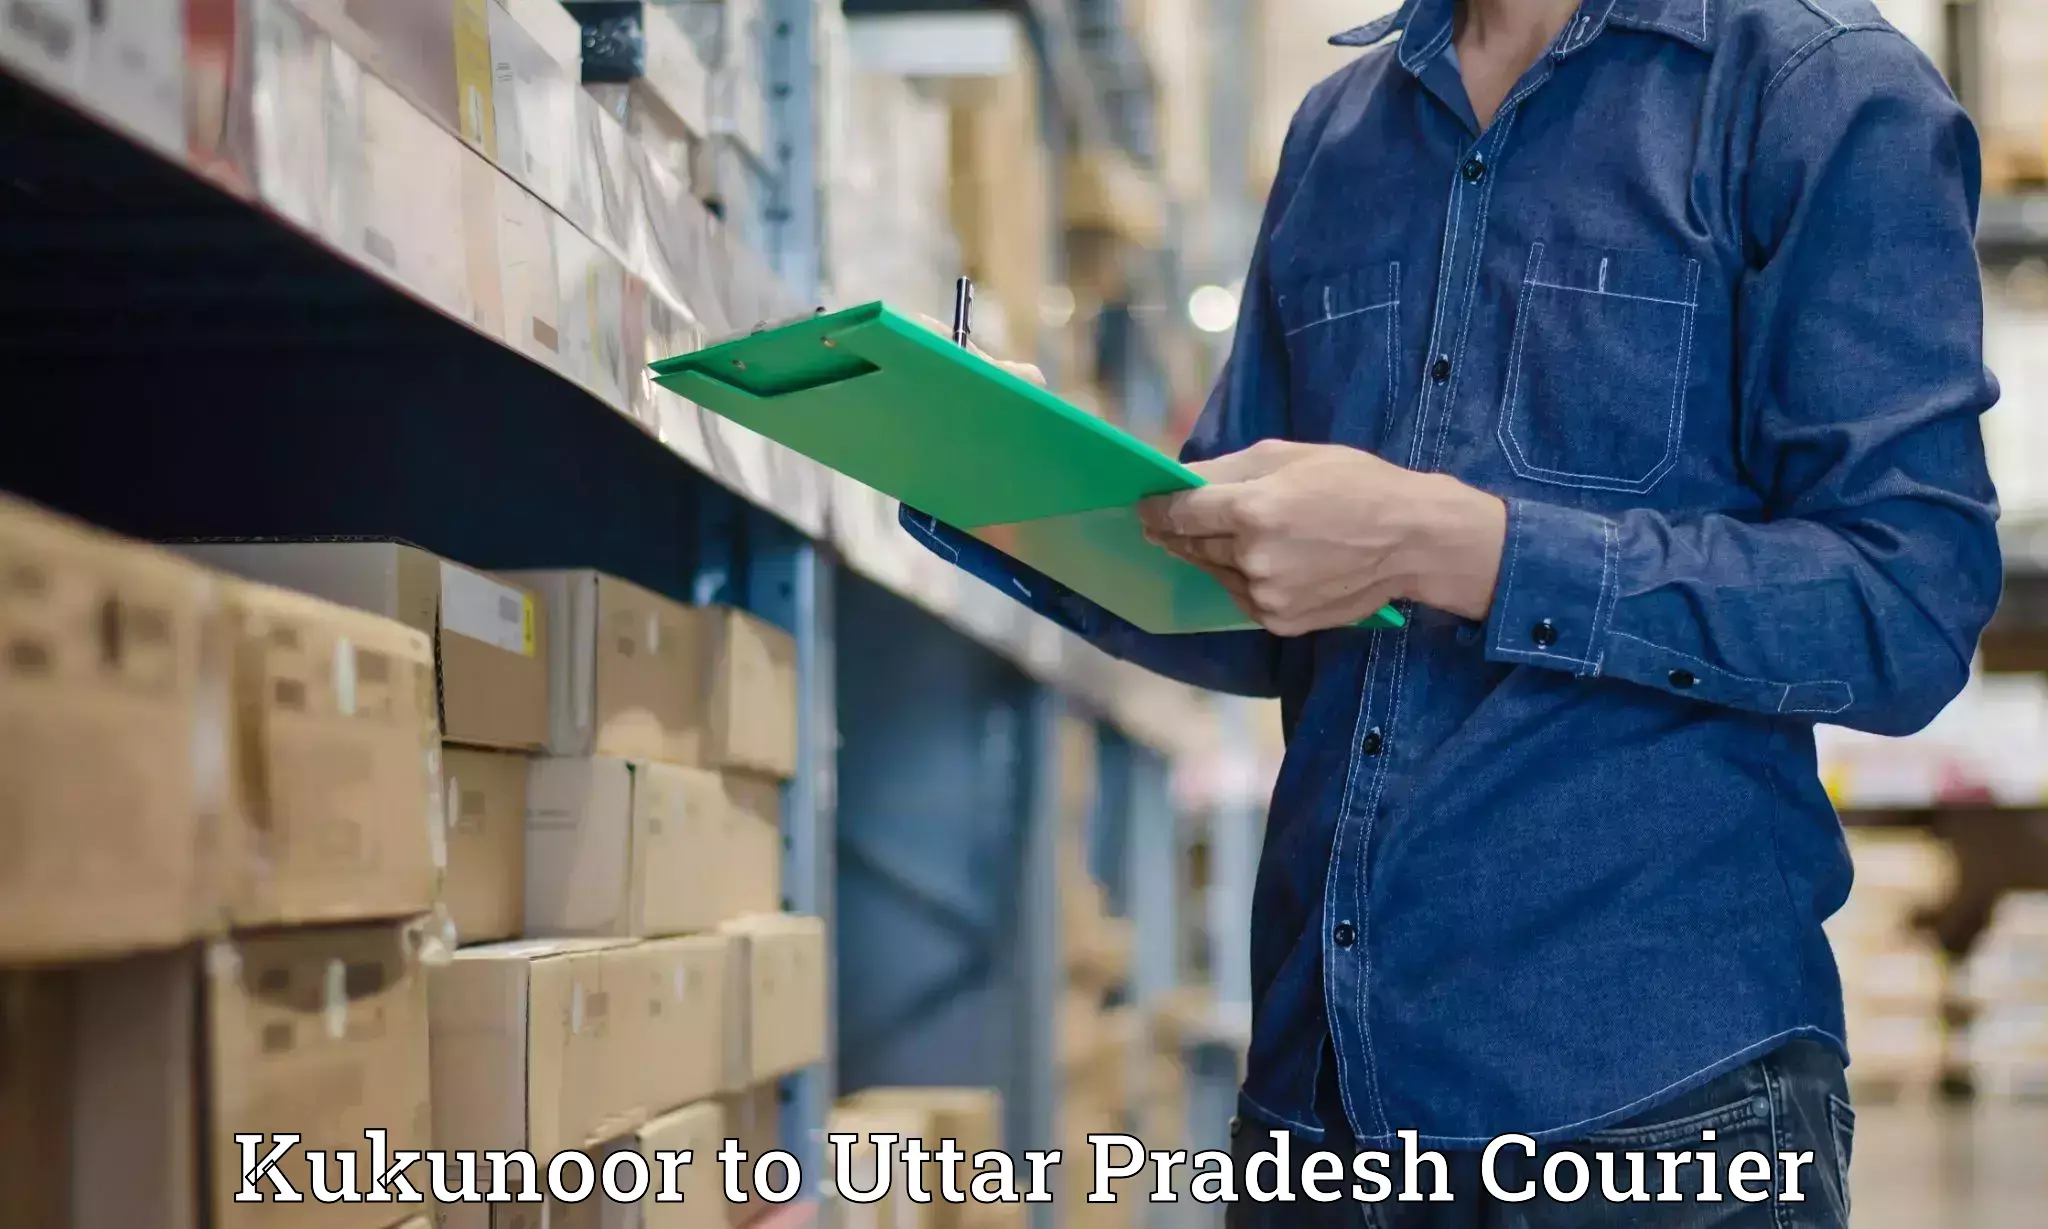 24-hour courier service Kukunoor to Aligarh